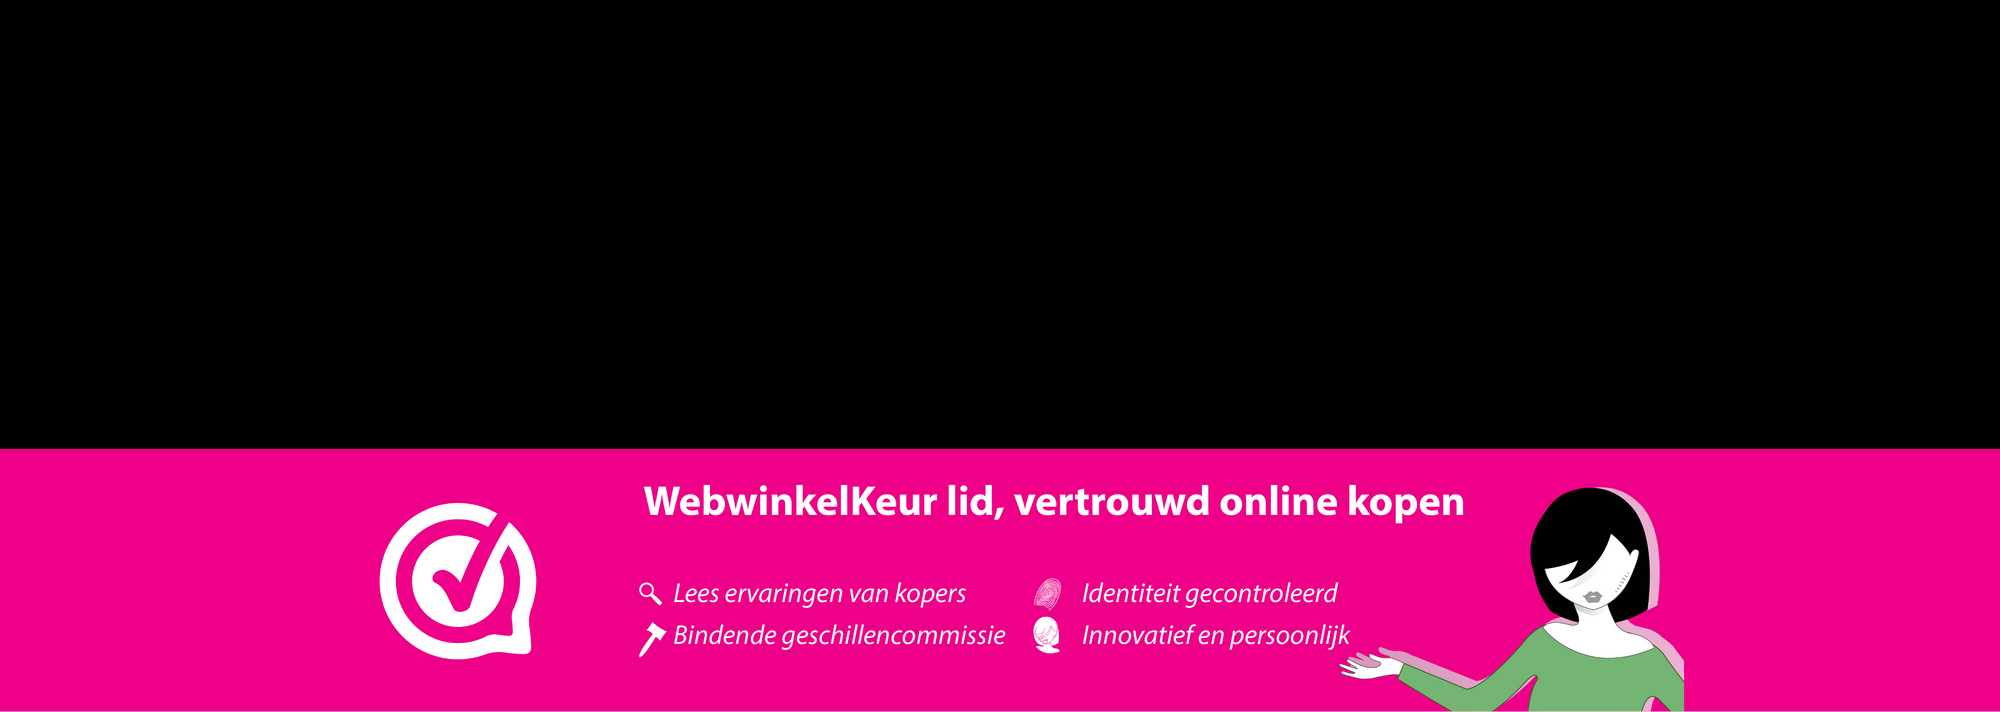 Intimitijd is aangesloten bij Stichting WebwinkelKeur